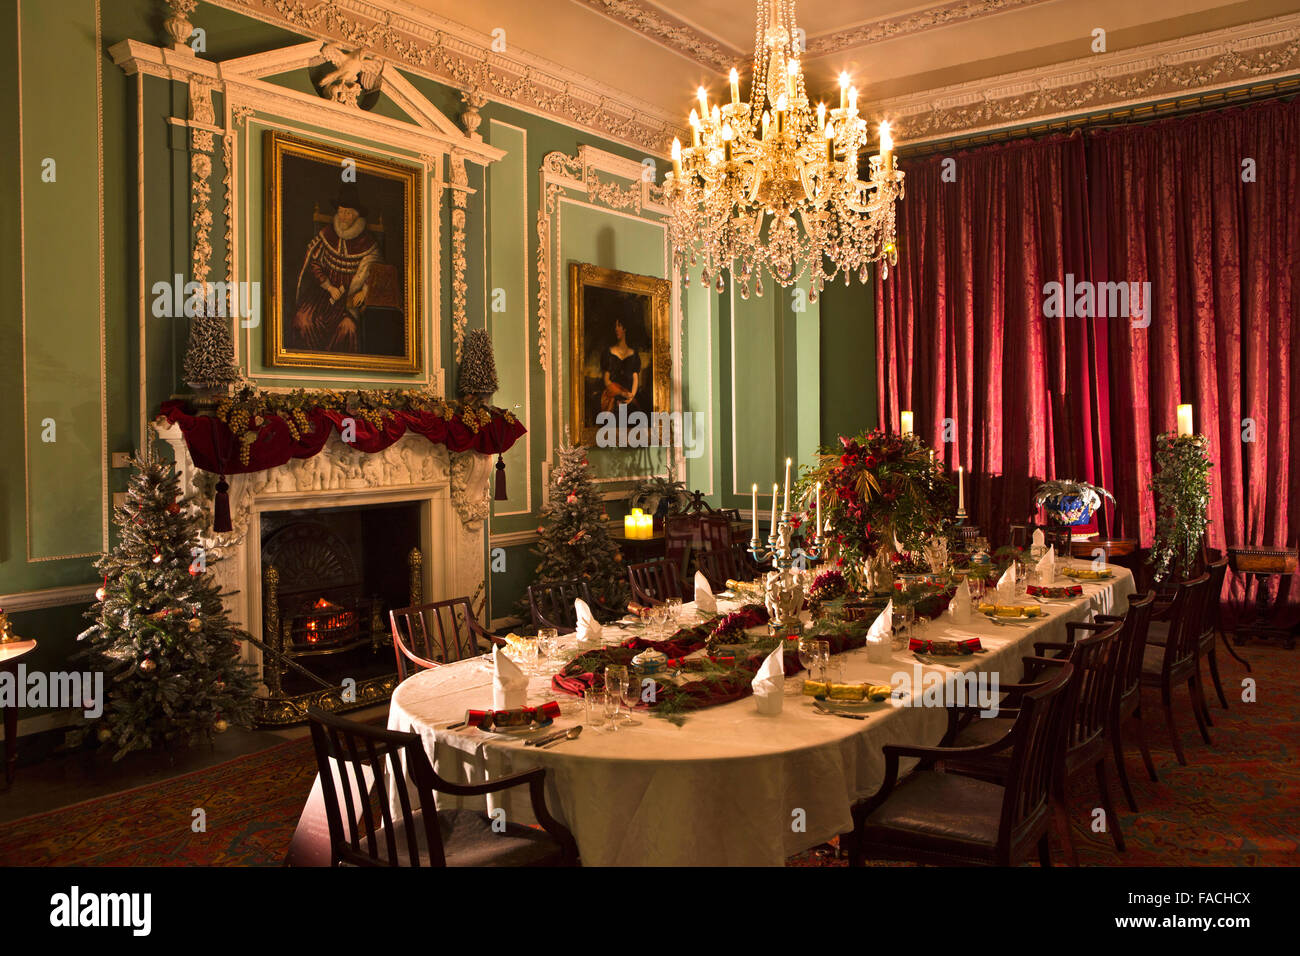 Royaume-uni, Angleterre, Cheshire, Knutsford, Tatton Hall, décorations de Noël dans la salle à manger Banque D'Images